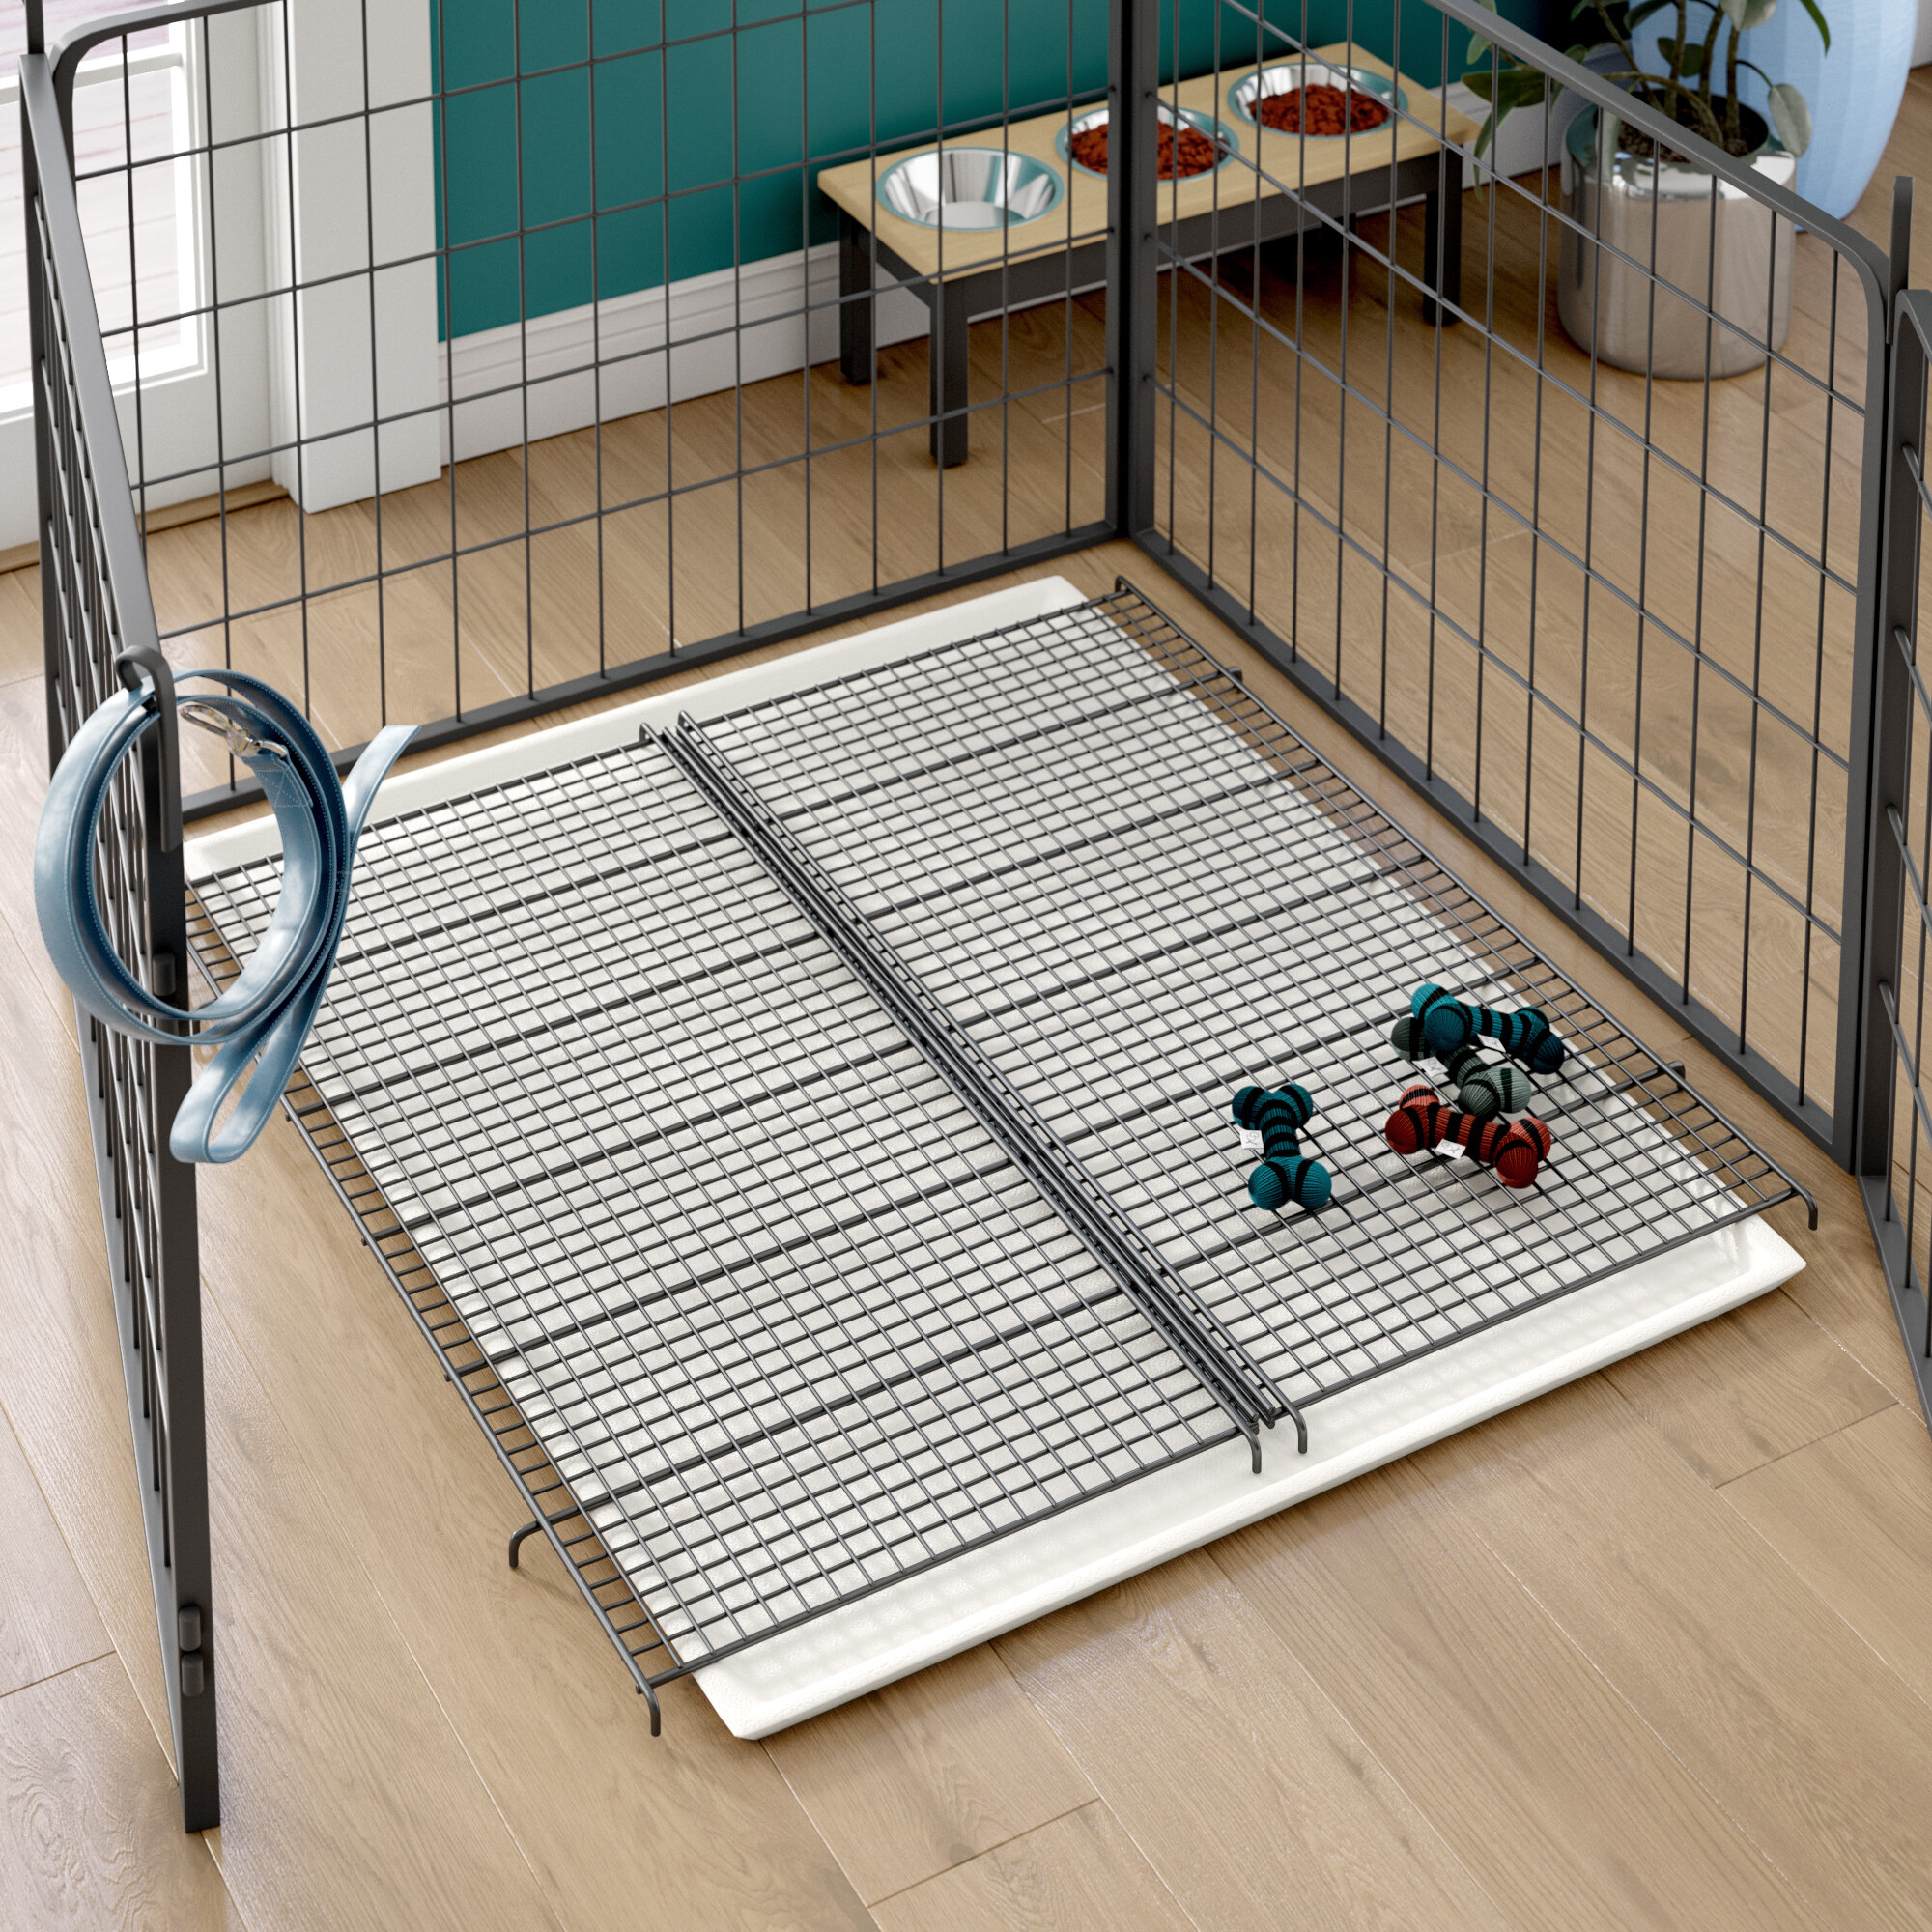 Dog Playpen Floor Mat